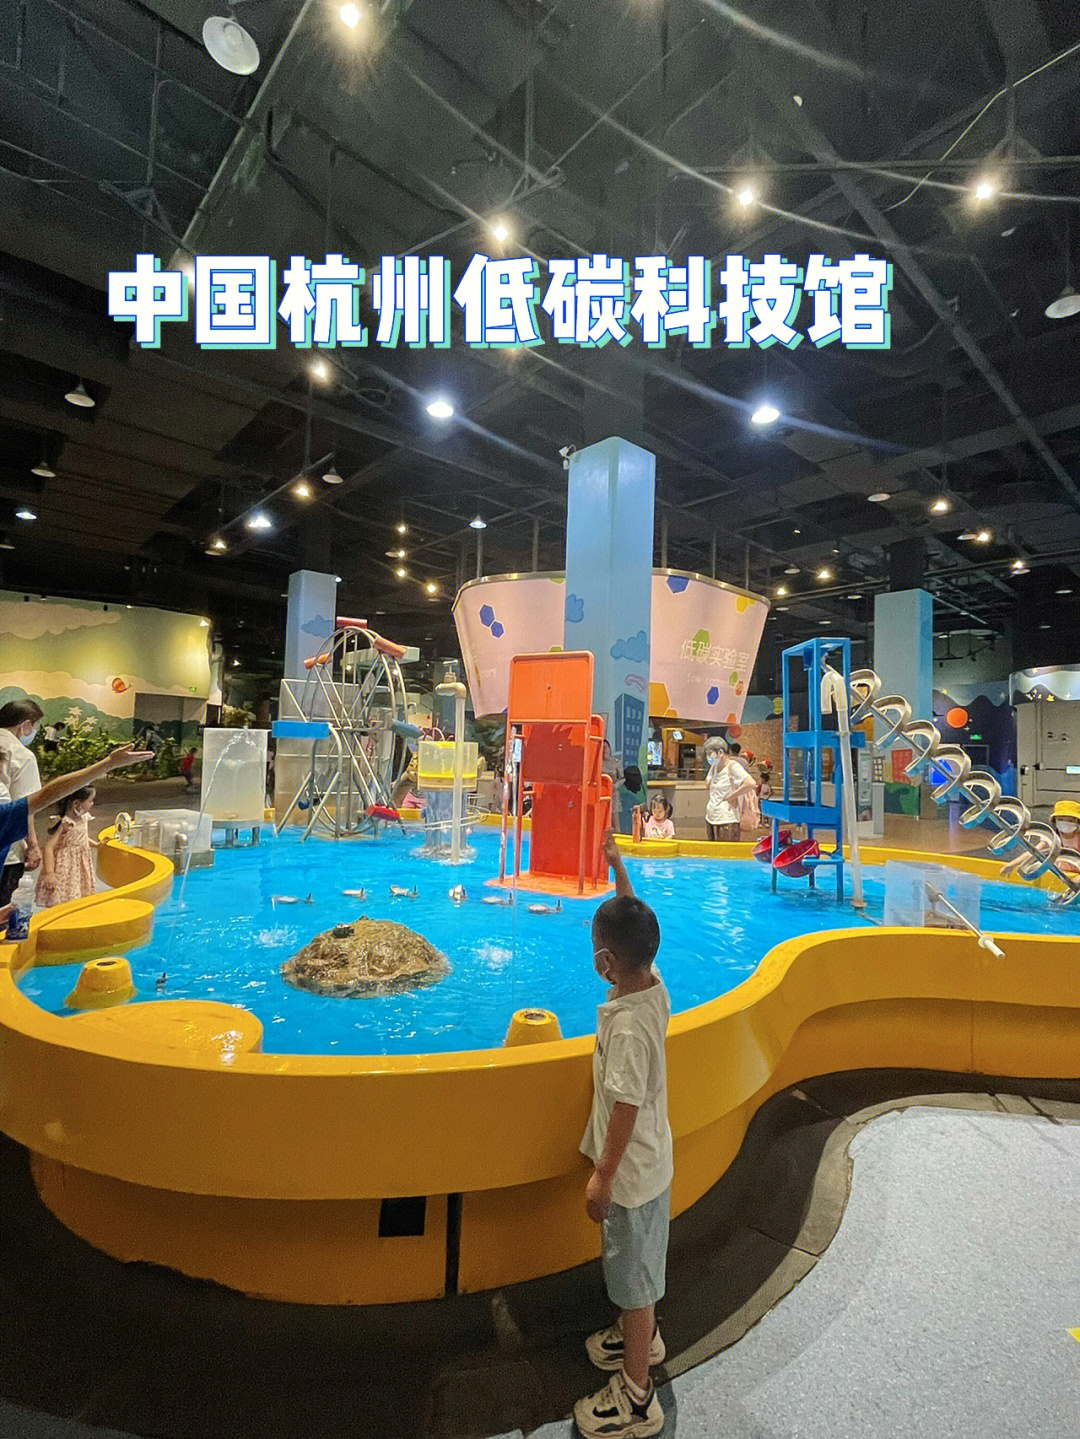 4岁多的bluey已经是5刷低碳科技馆了低碳博物馆应该是杭州博物馆中